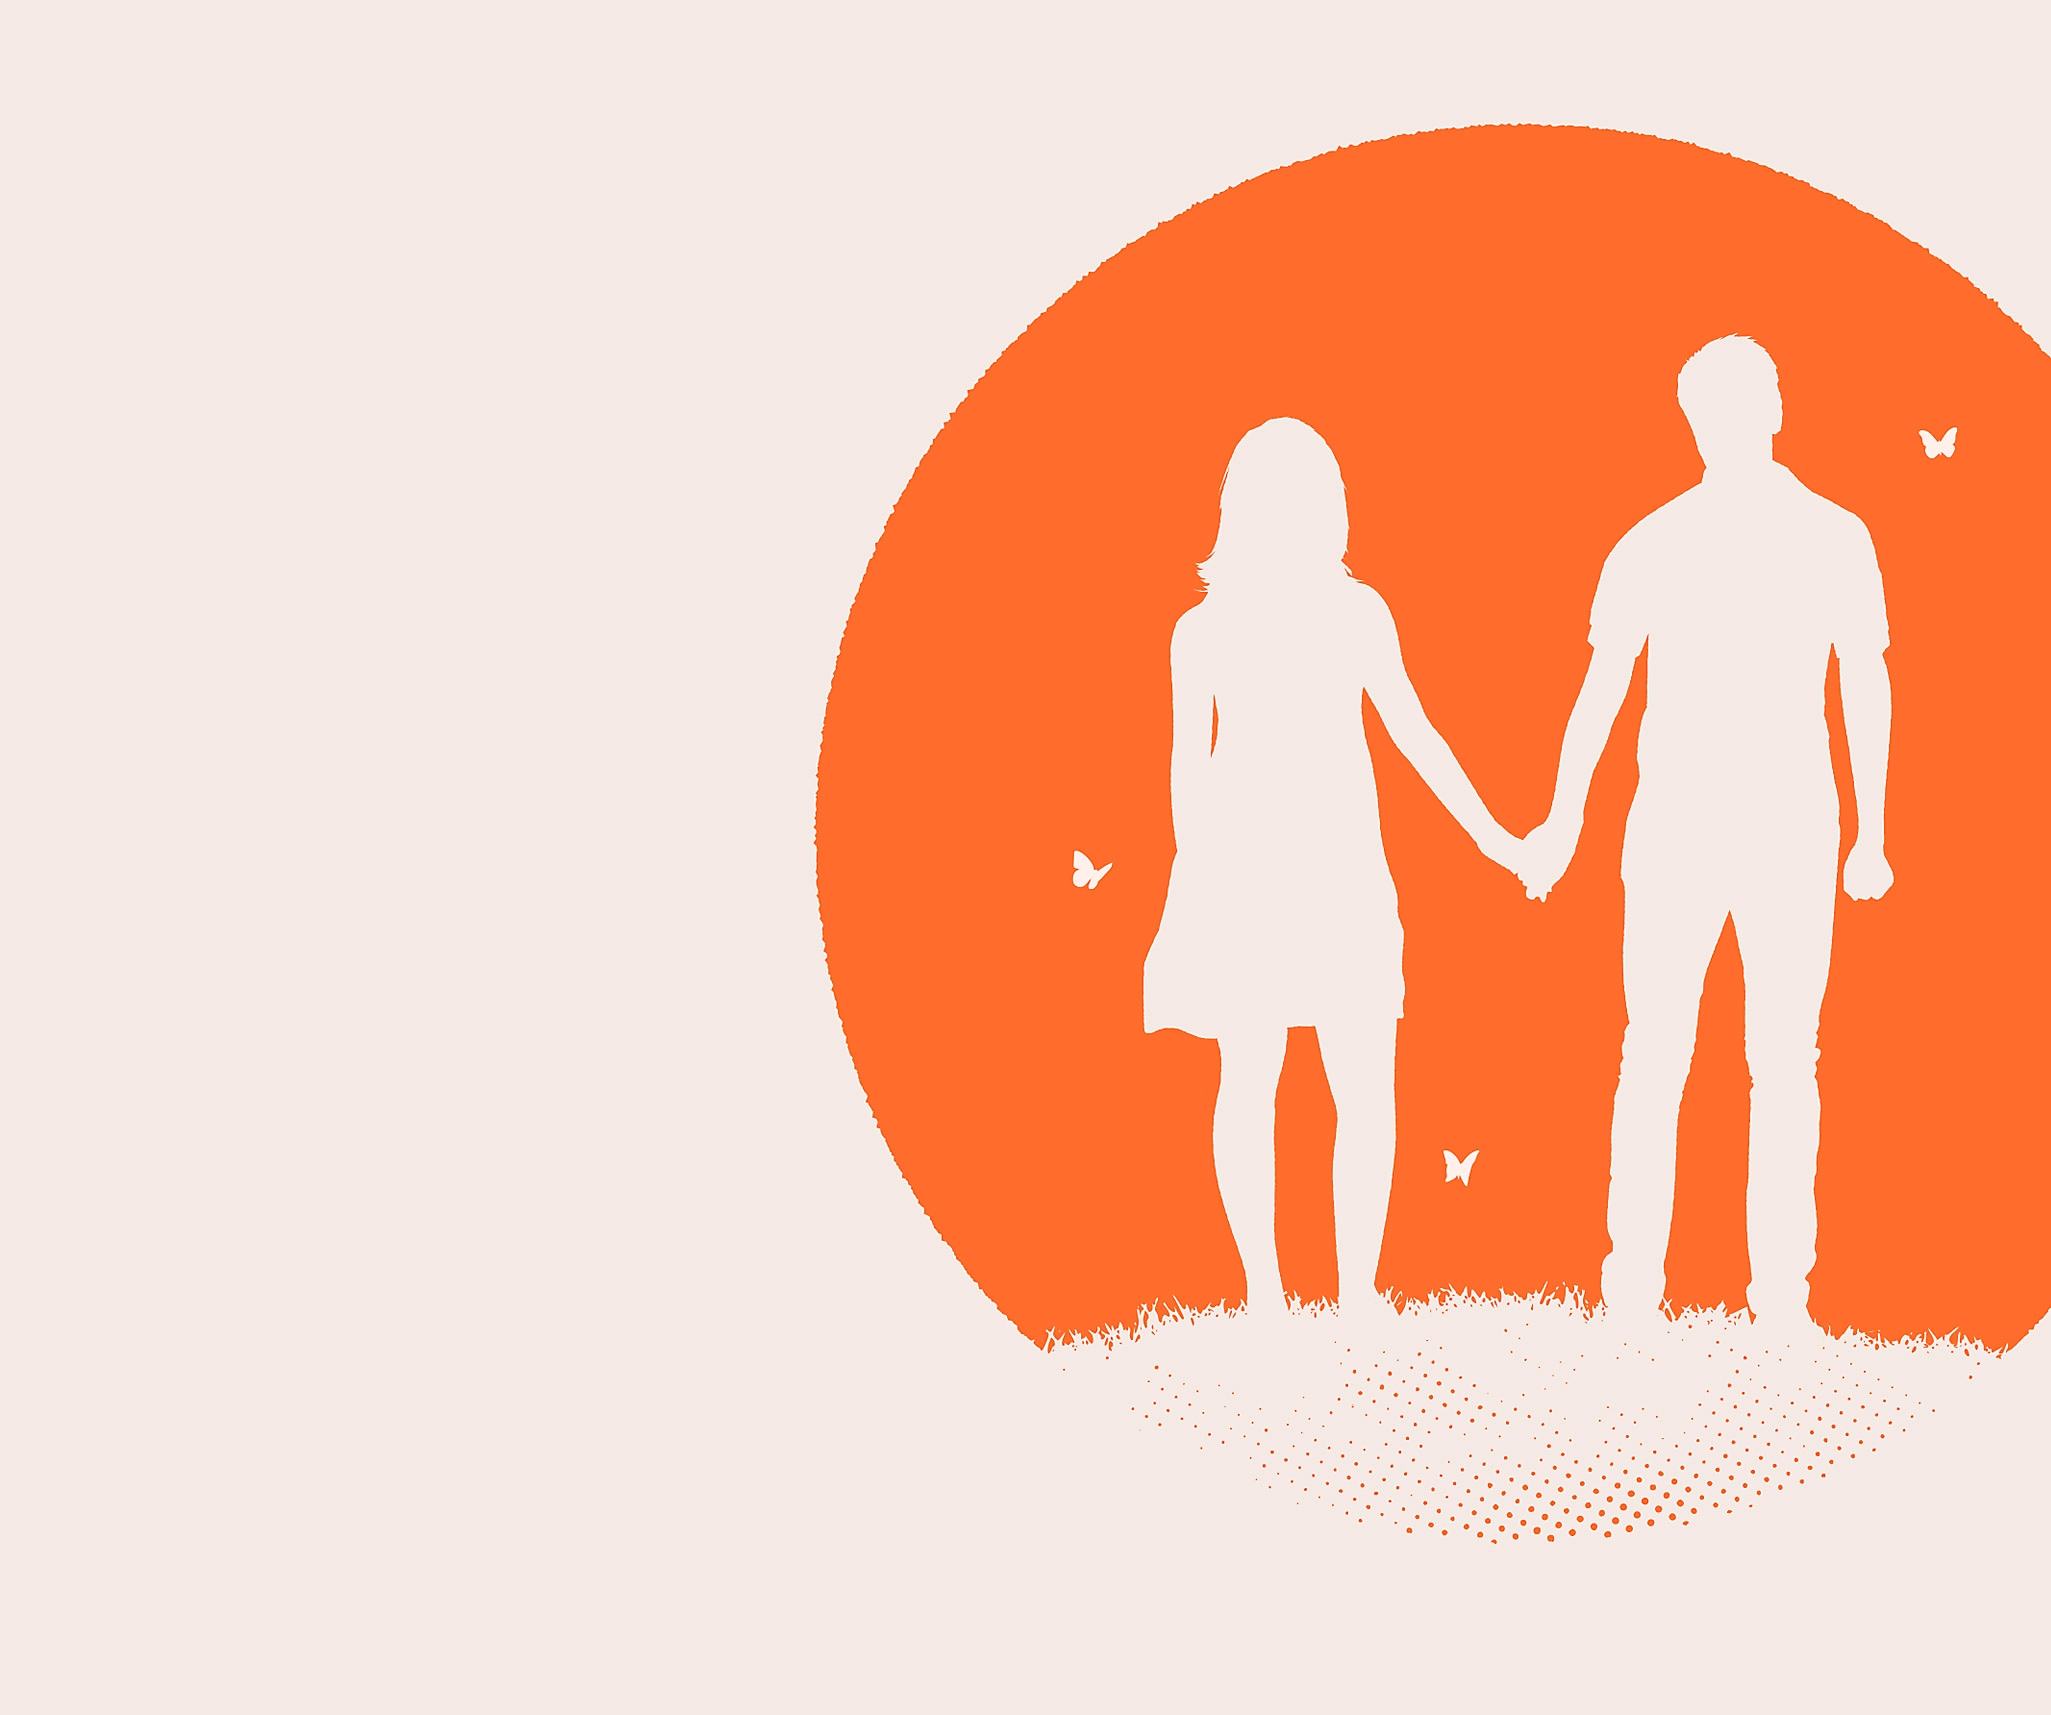 Arte principal de Everybody's Gone to the Rapture que muestra a un hombre y una mujer en silueta blanca sobre un círculo naranja.